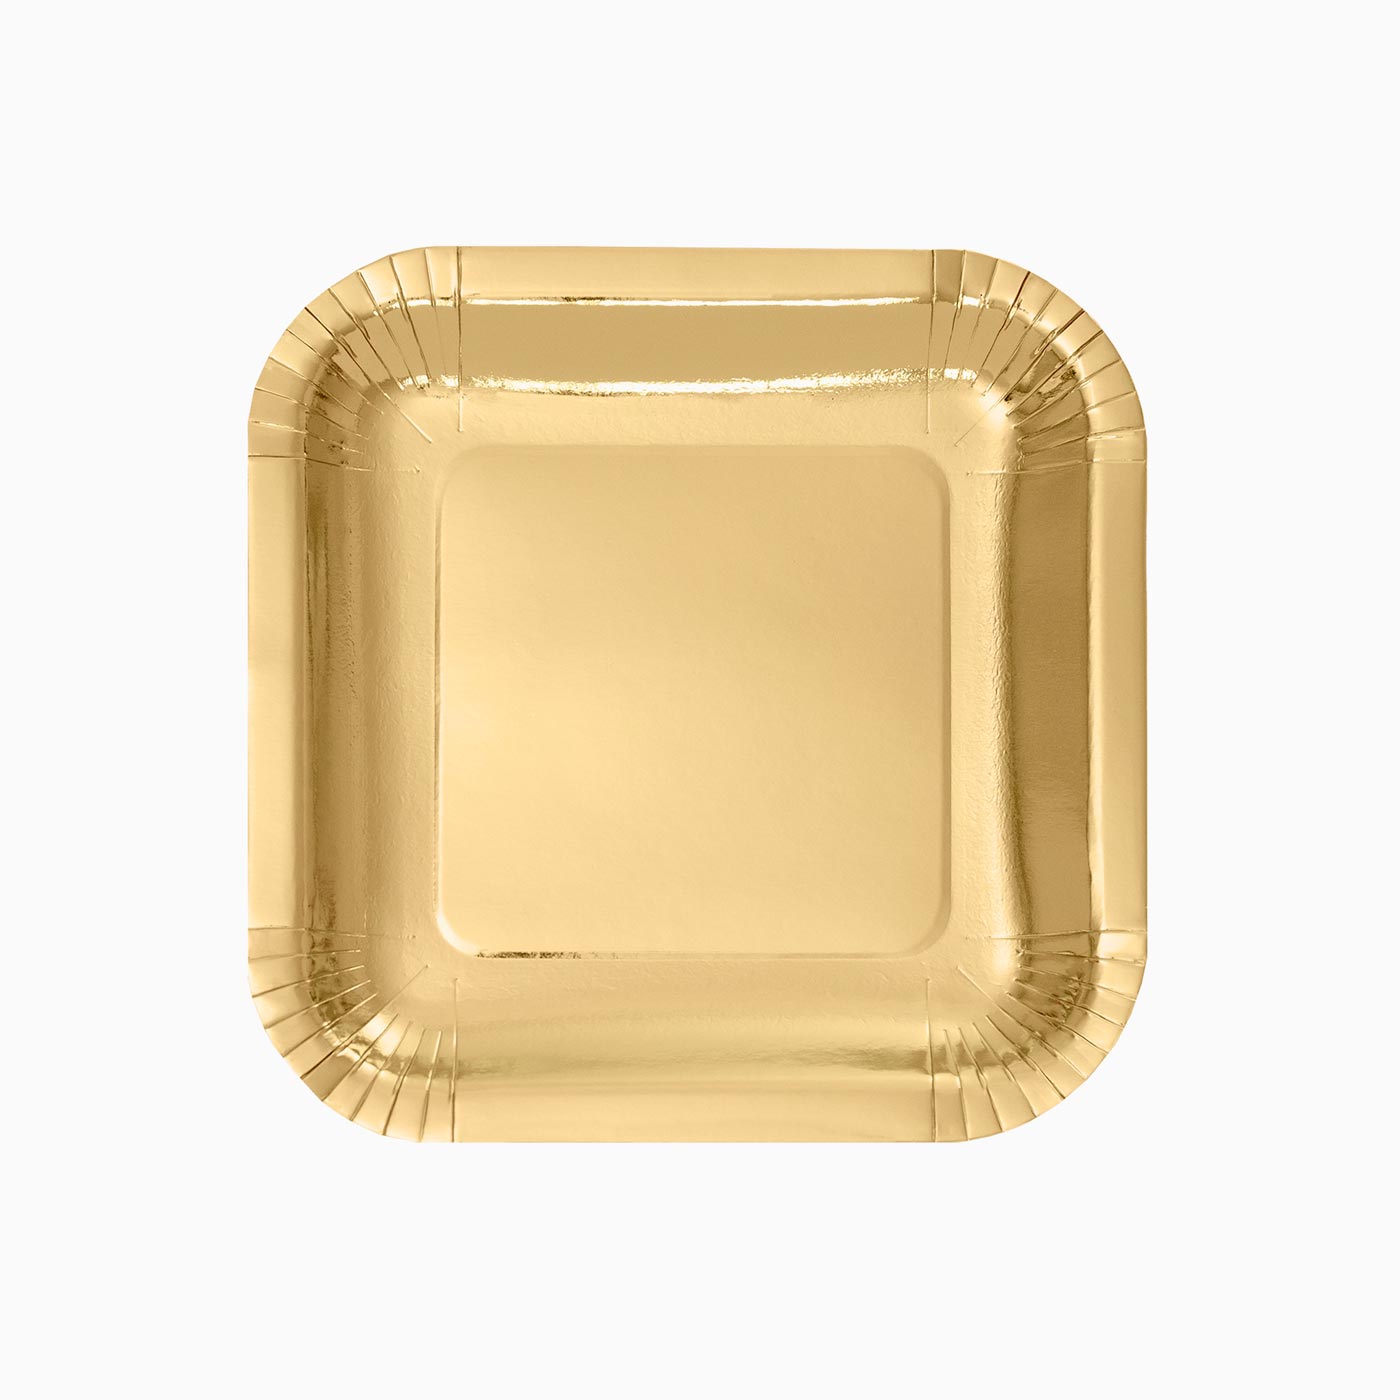 Metallized Plain Carton Platon 18 x 18 cm de ouro